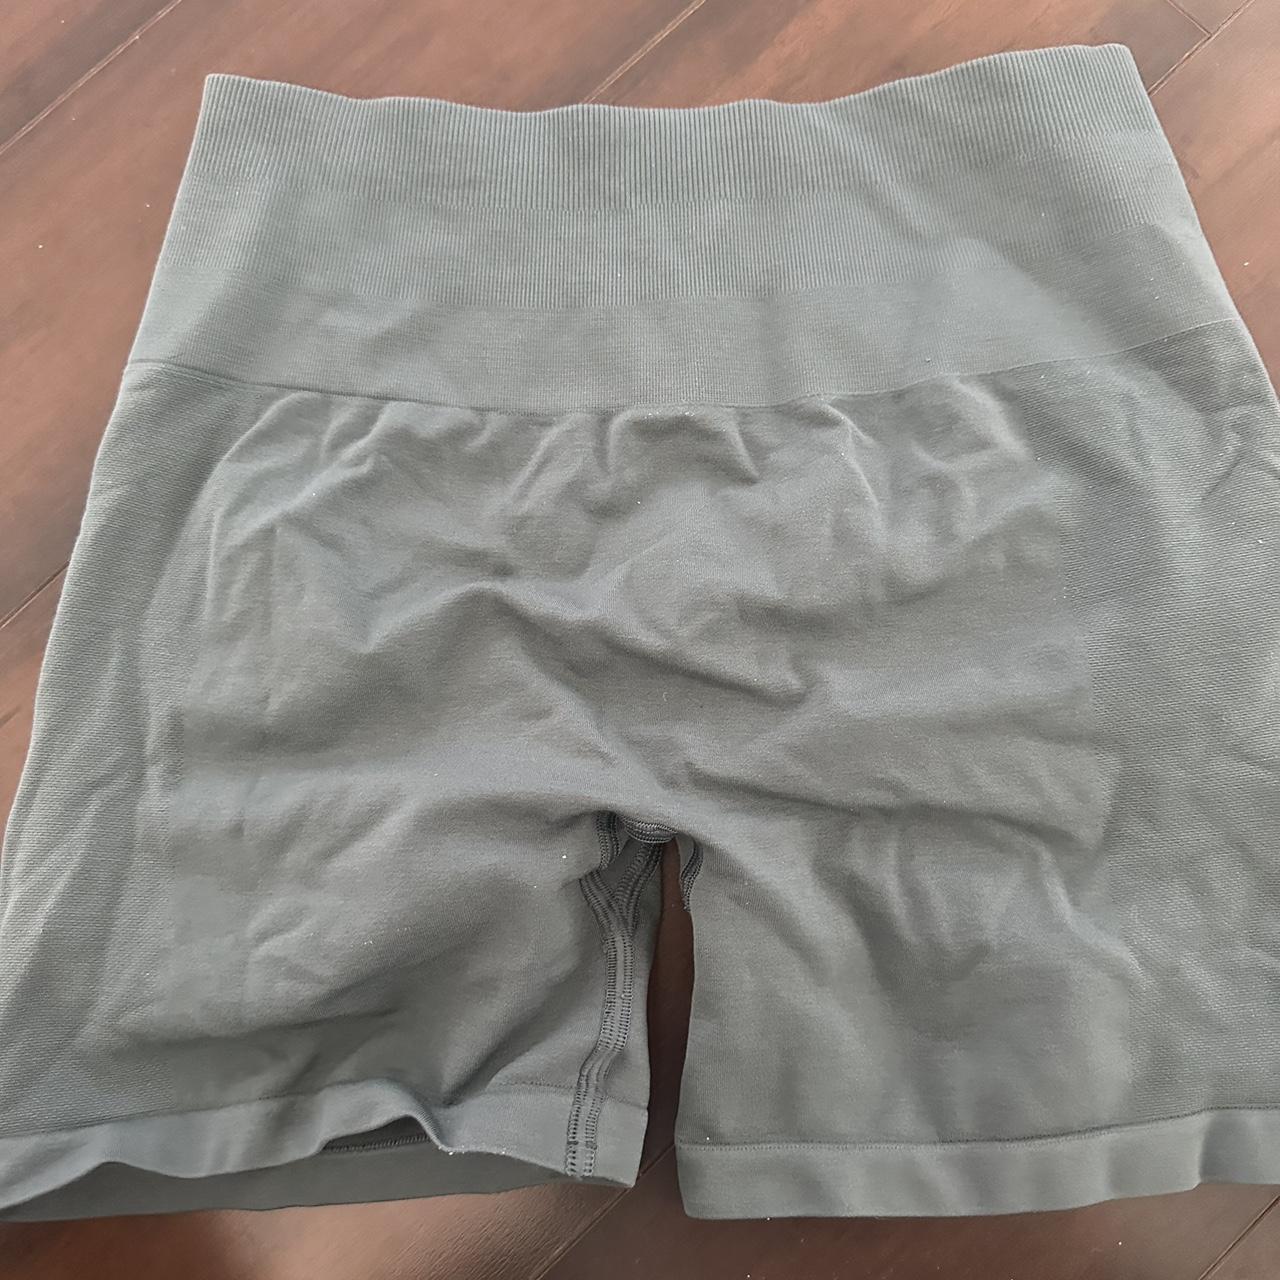 Alphalete Amplify shorts 4.5” Size M Hazelnut Worn - Depop